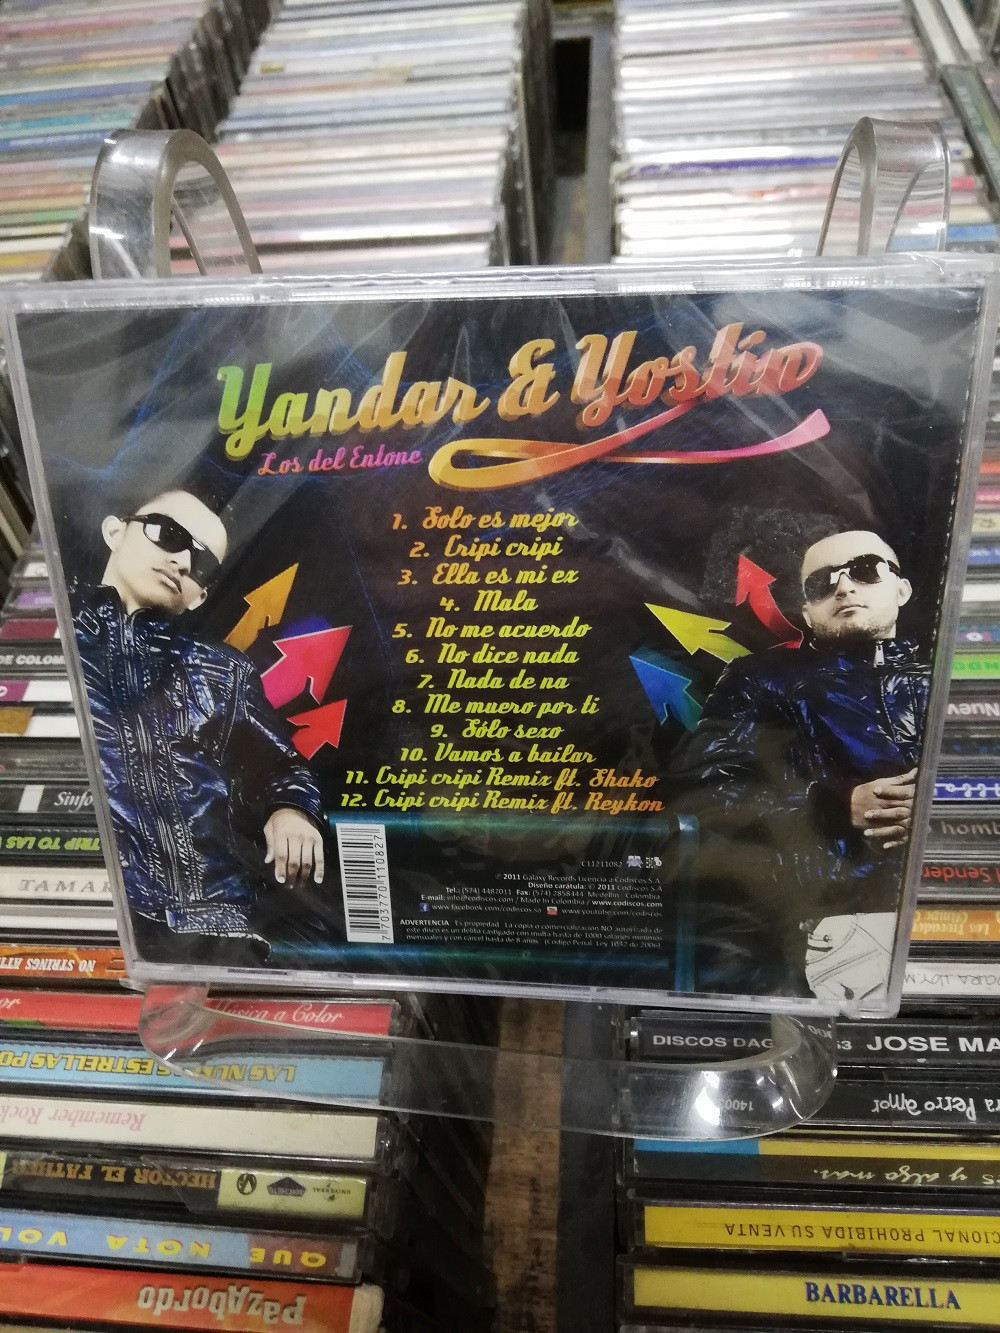 Imagen CD YANDAR & YOSLIN - LOS DEL ENTONE 2